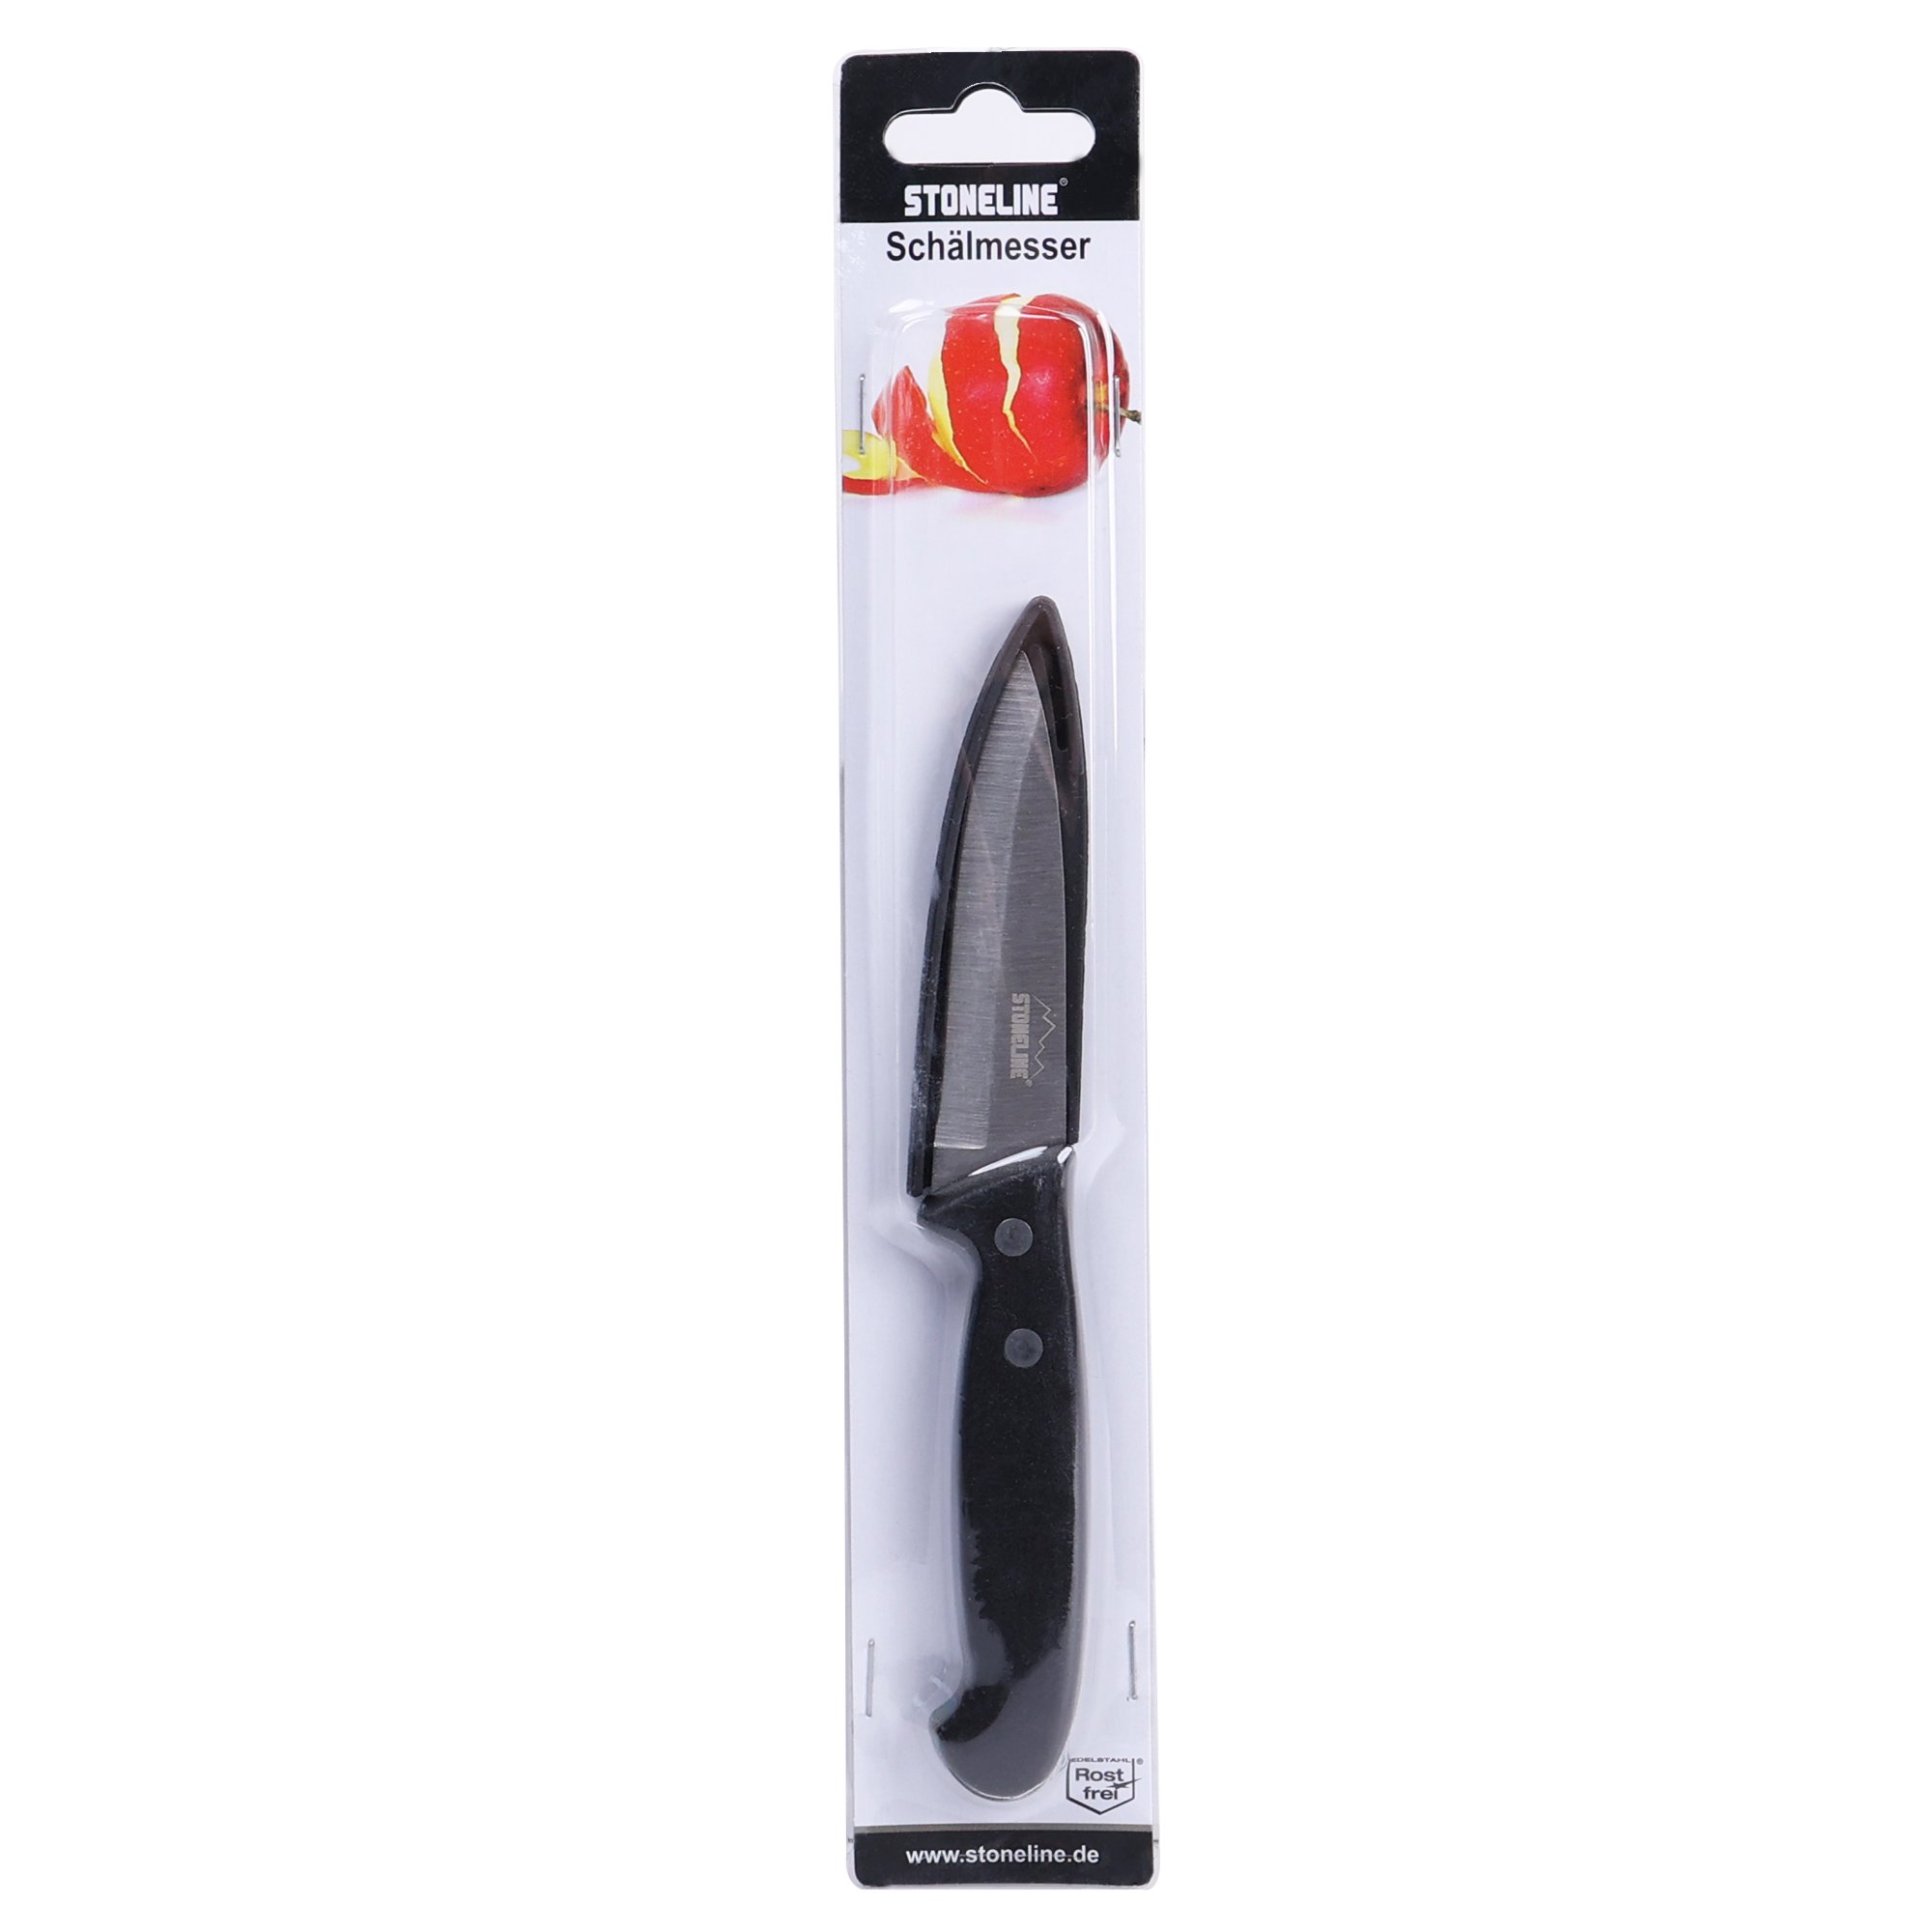 Cuchillo STONELINE® 18,7 cm, con protector de hoja